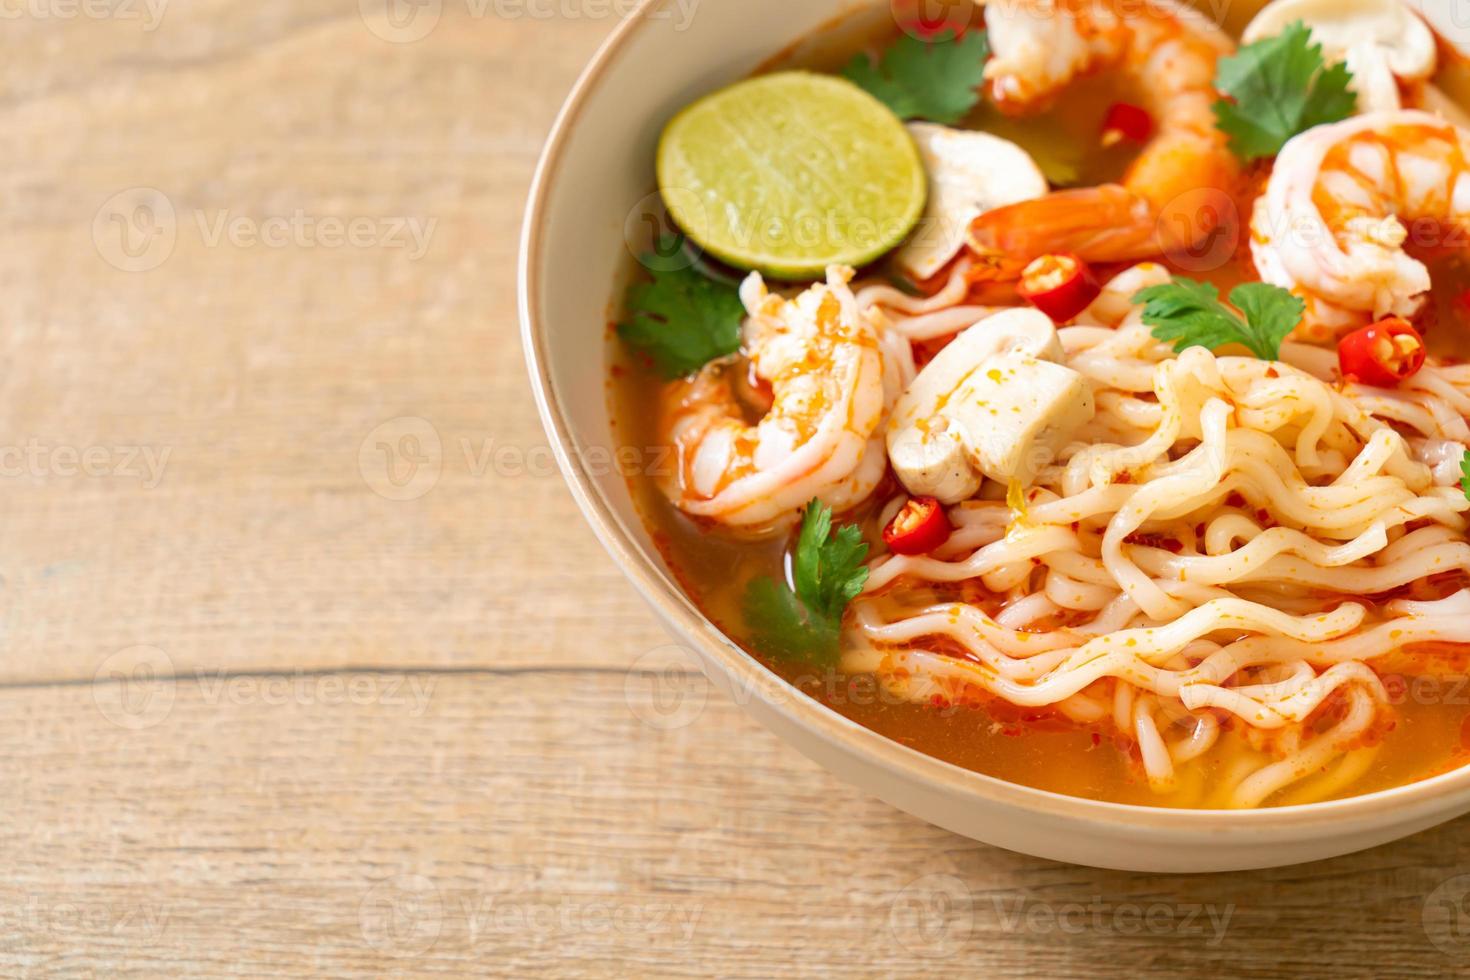 fideos instantáneos ramen en sopa picante con camarones tom yum kung - estilo de comida asiática foto